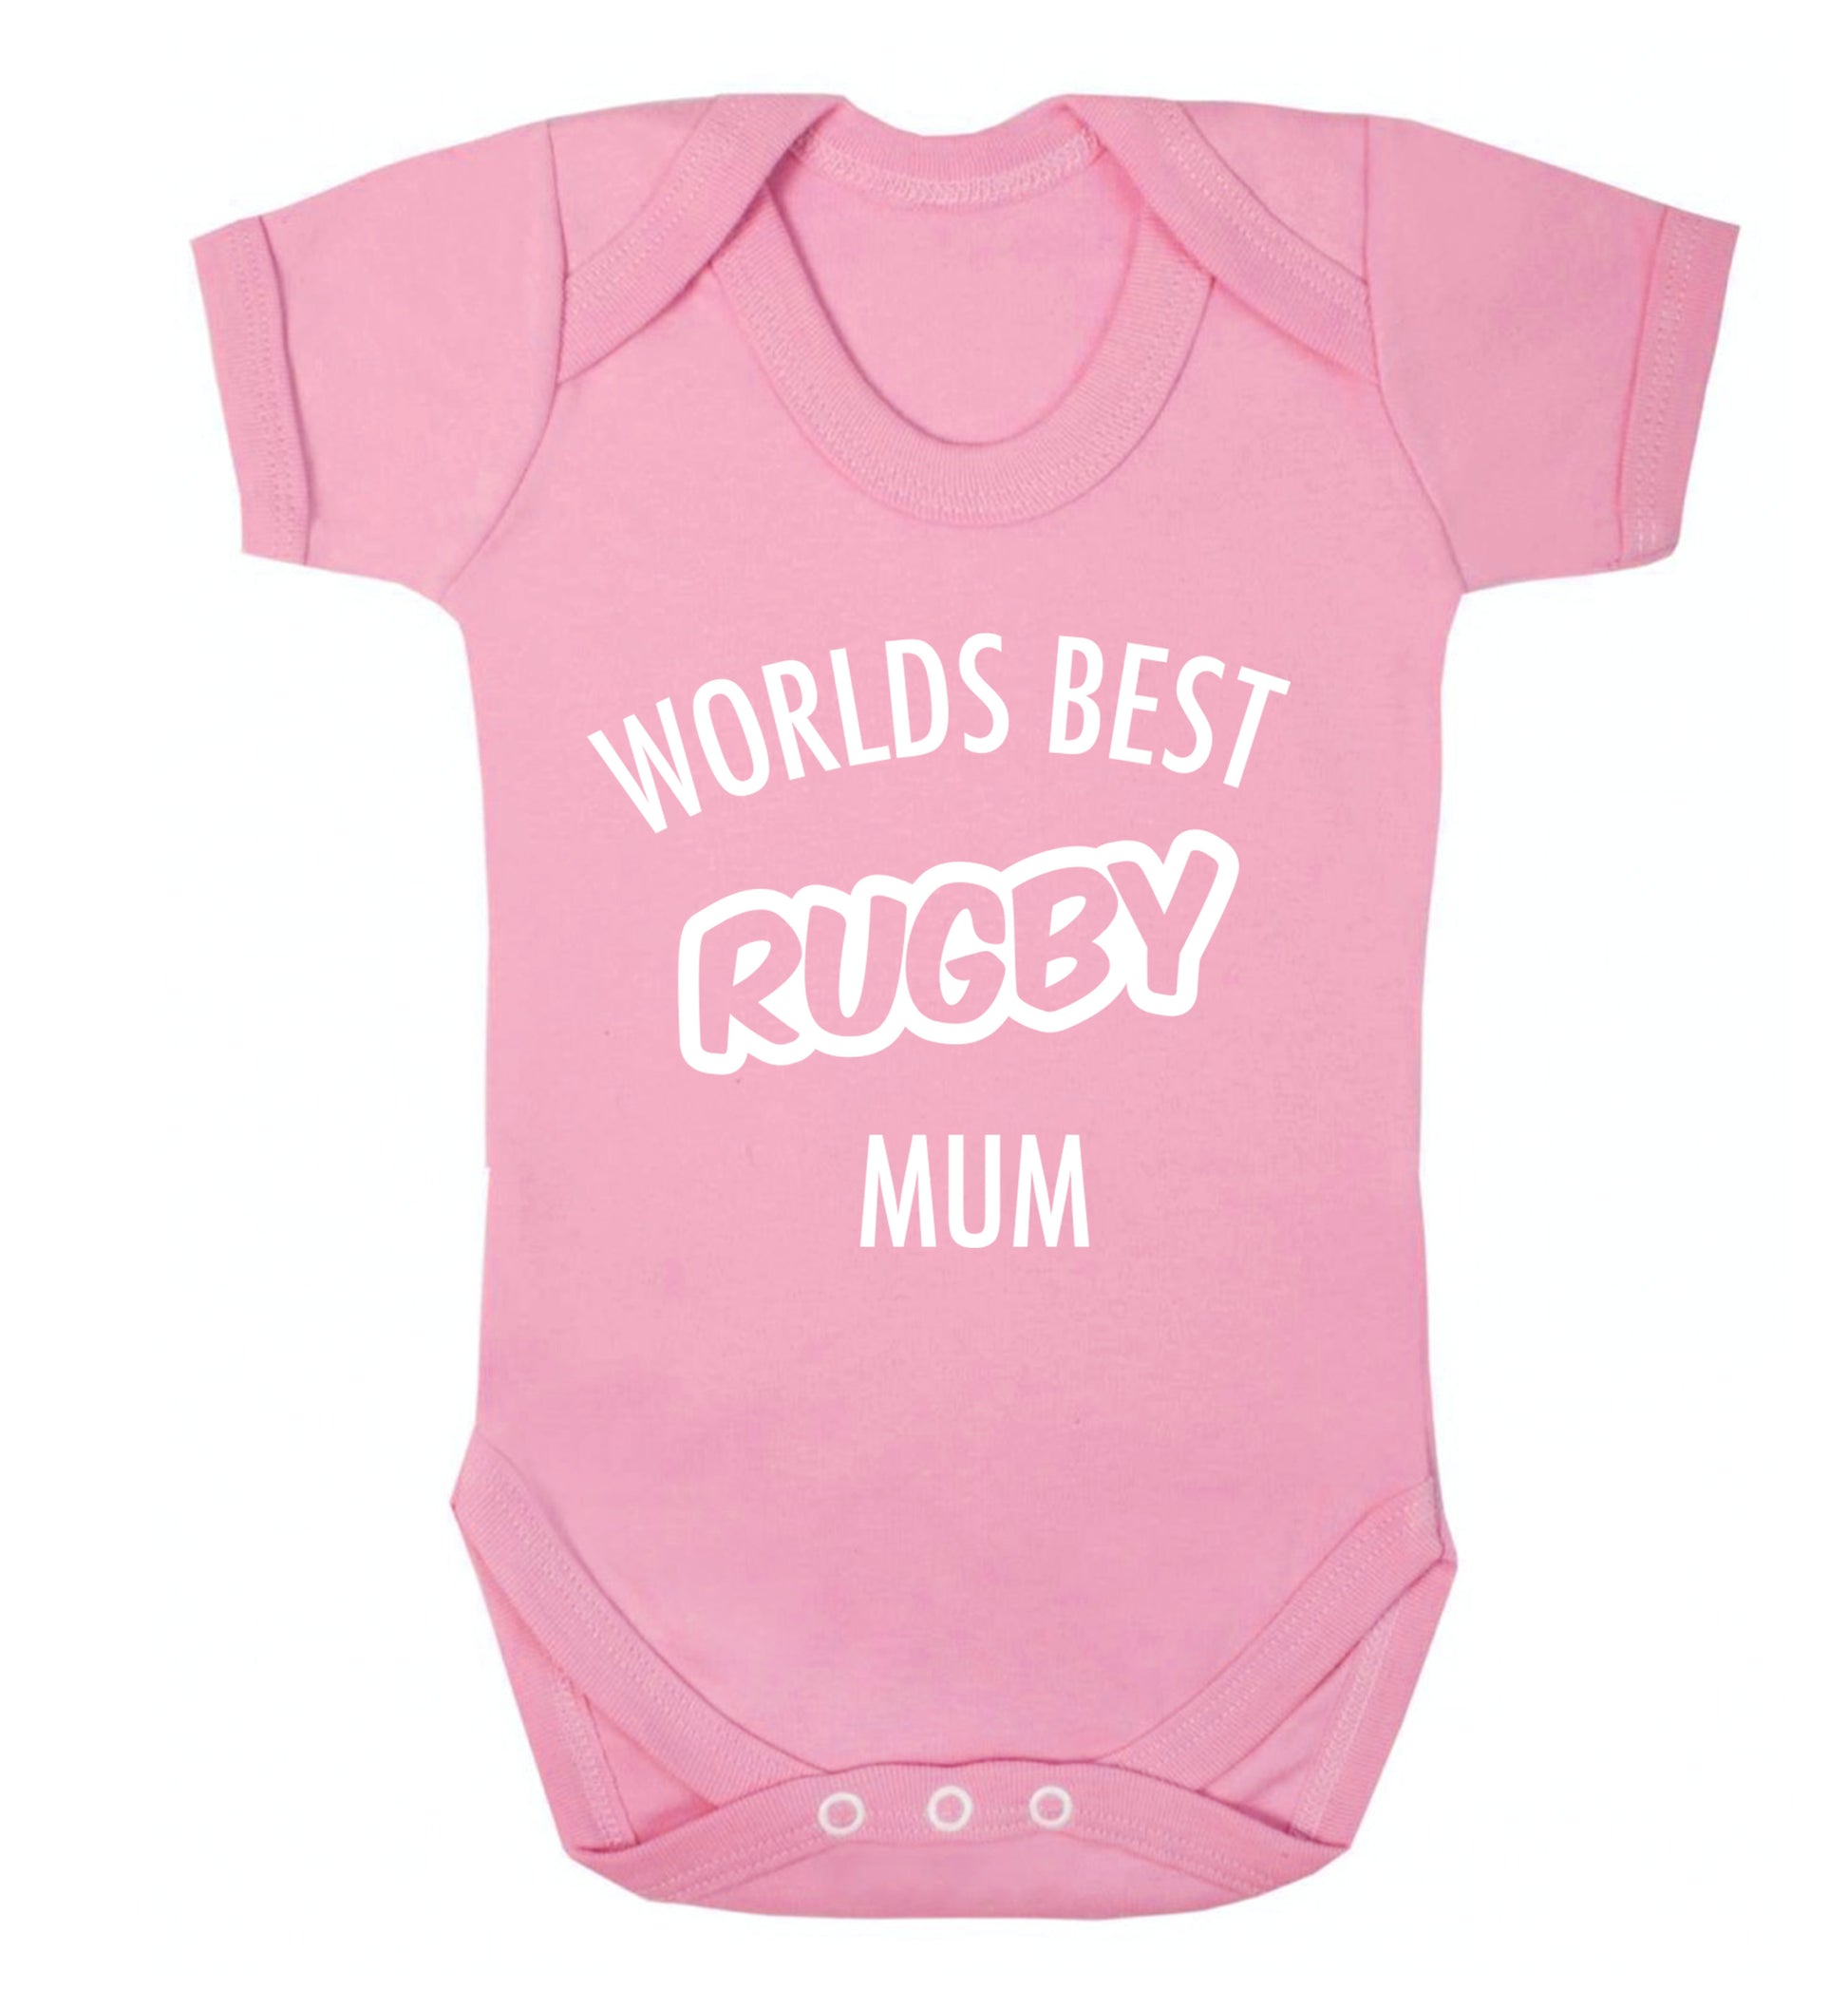 Worlds best rugby mum Baby Vest pale pink 18-24 months